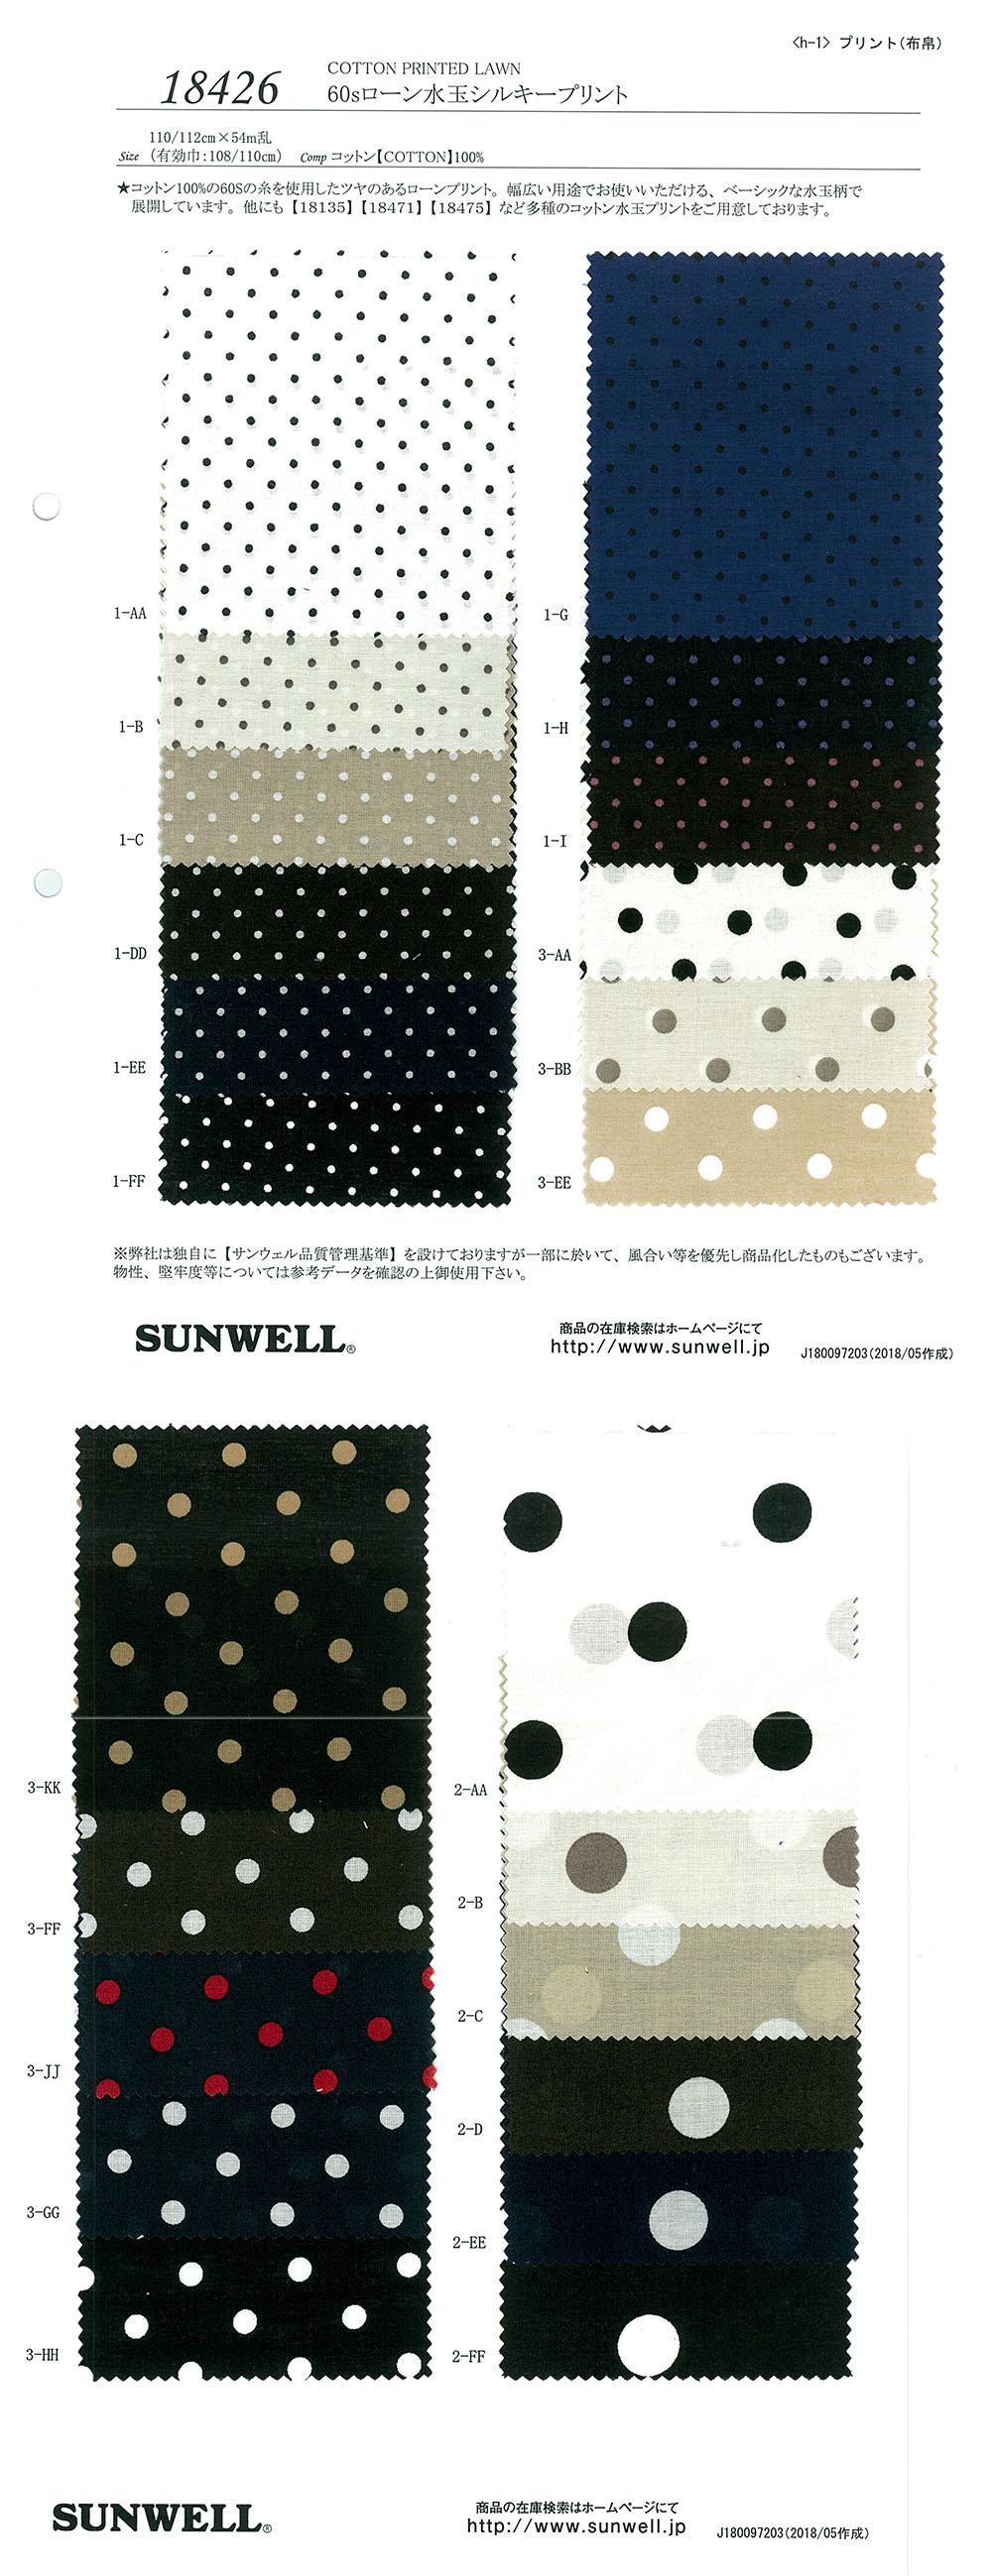 18426 Impressão Sedosa De Pontos De Gramado De 60 Fios[Têxtil / Tecido] SUNWELL